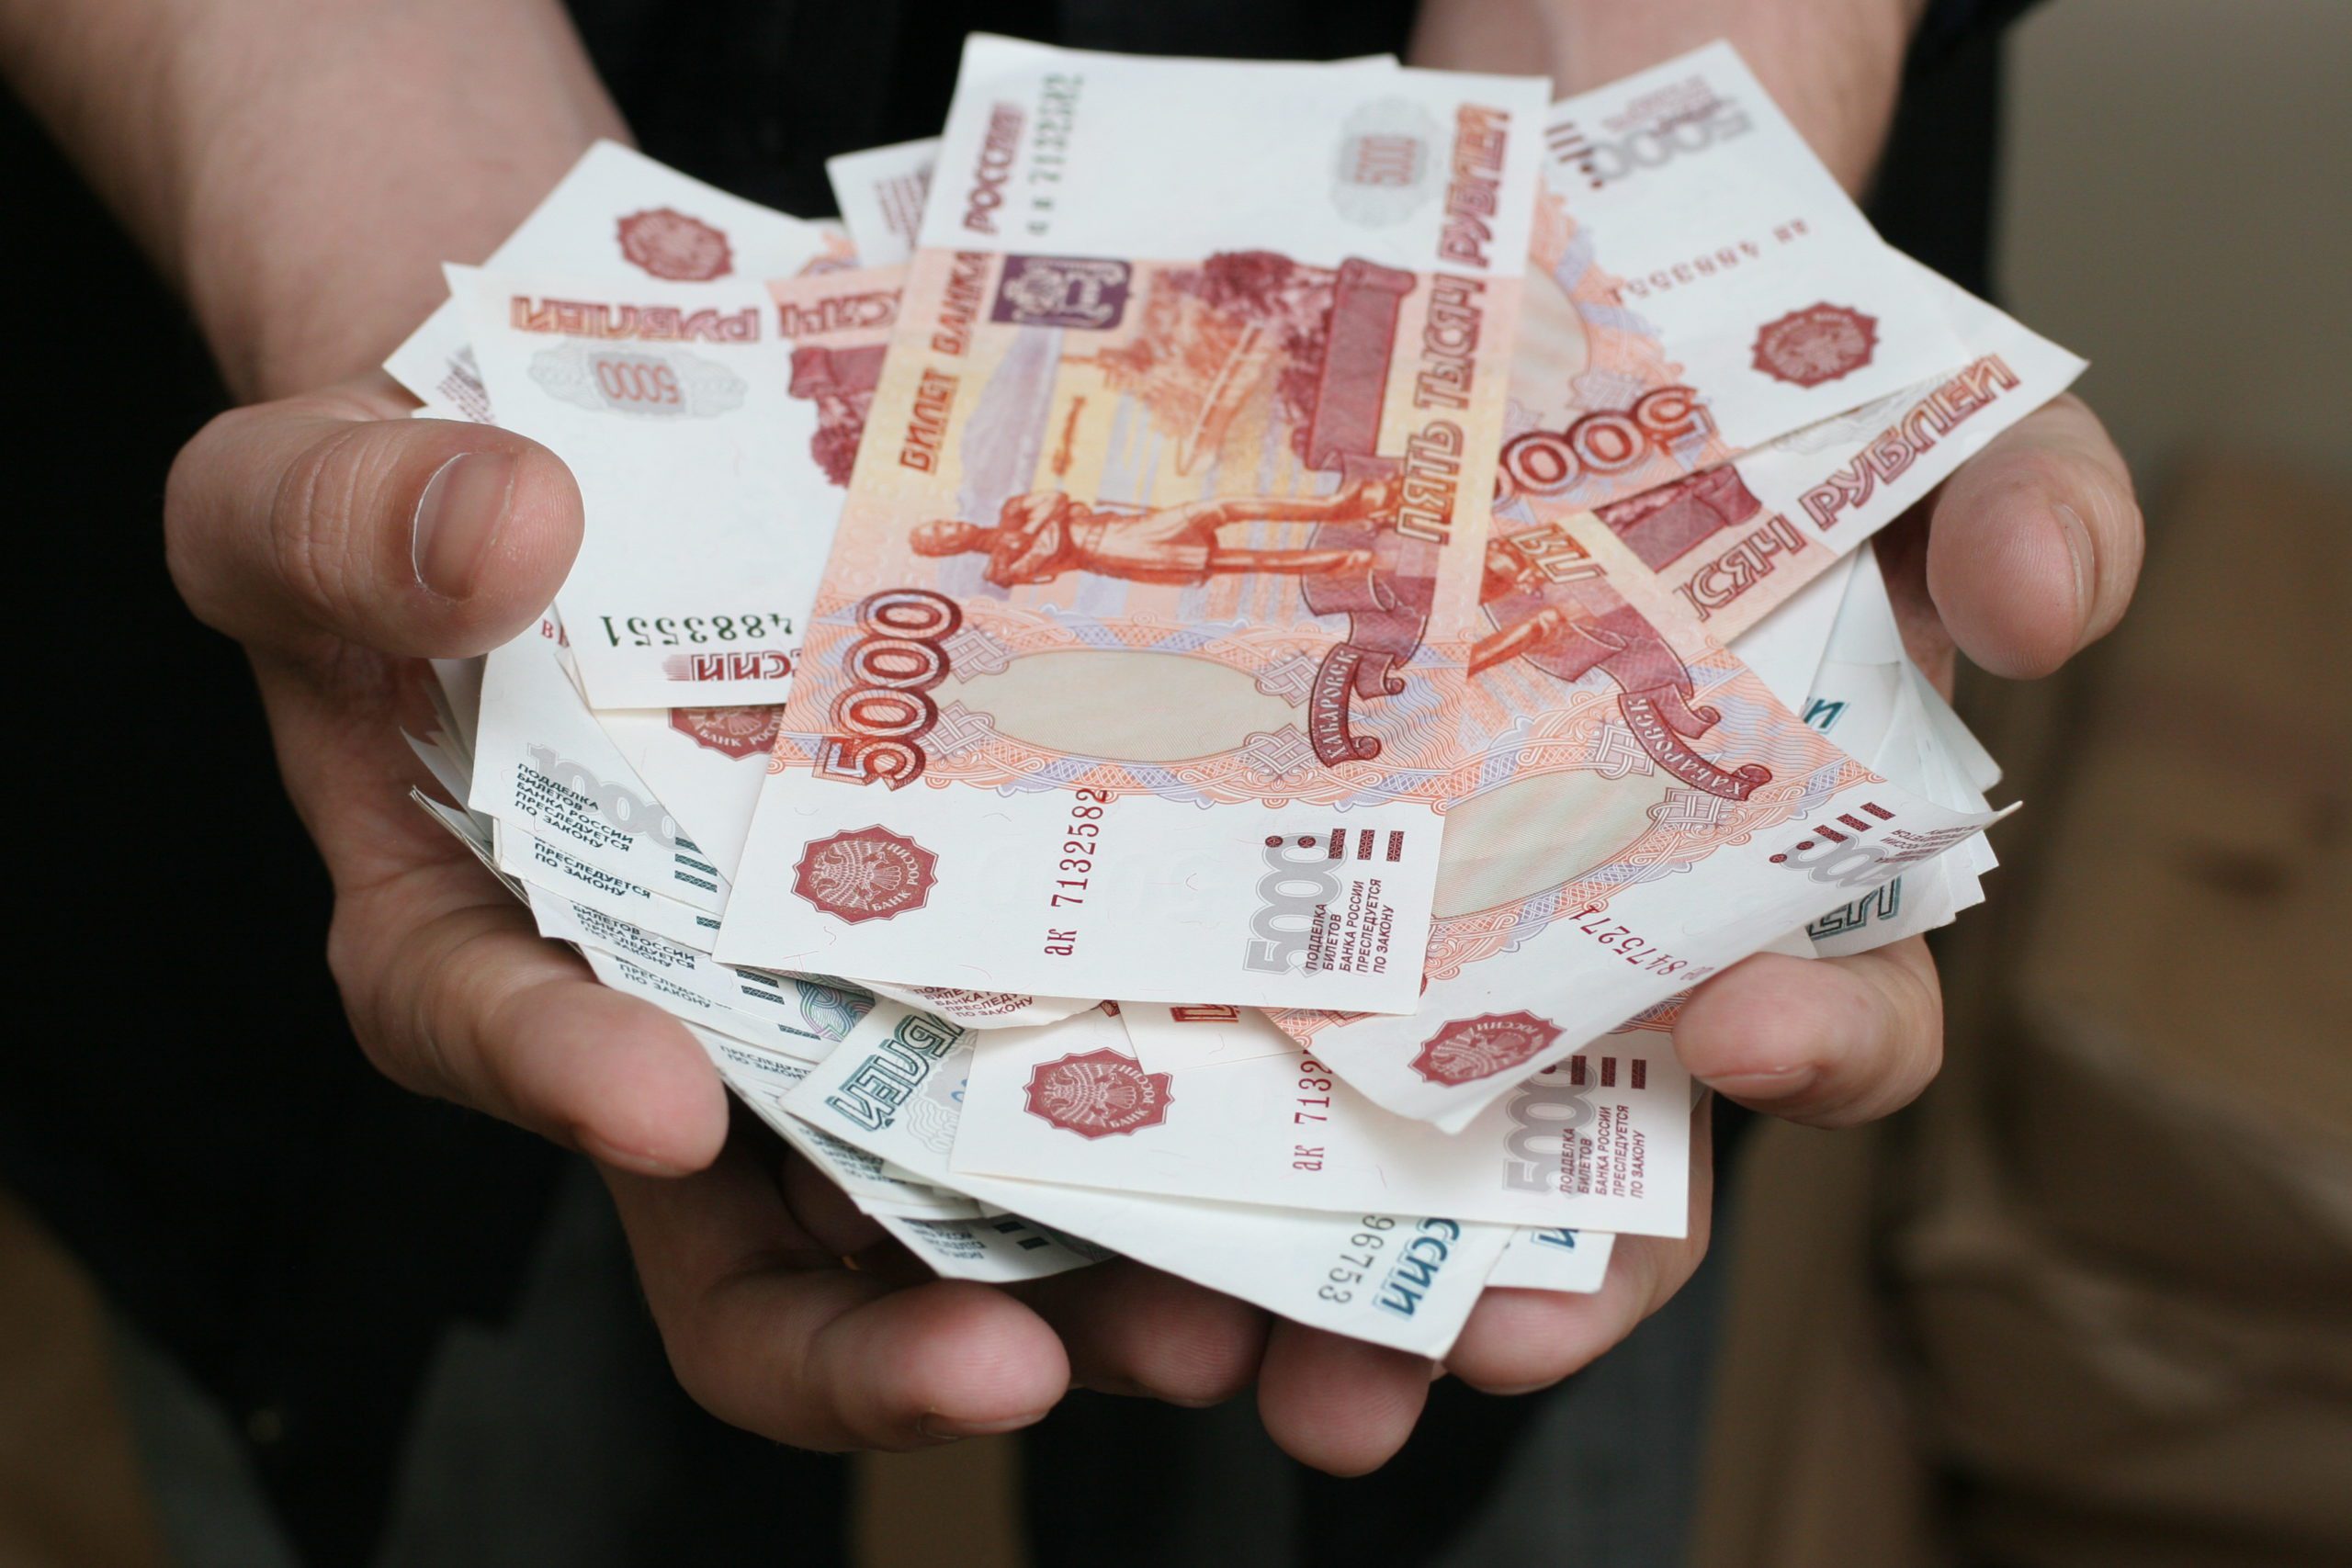 В Новокузнецке попала под суд жительница, похитившая деньги из лотка банкомата